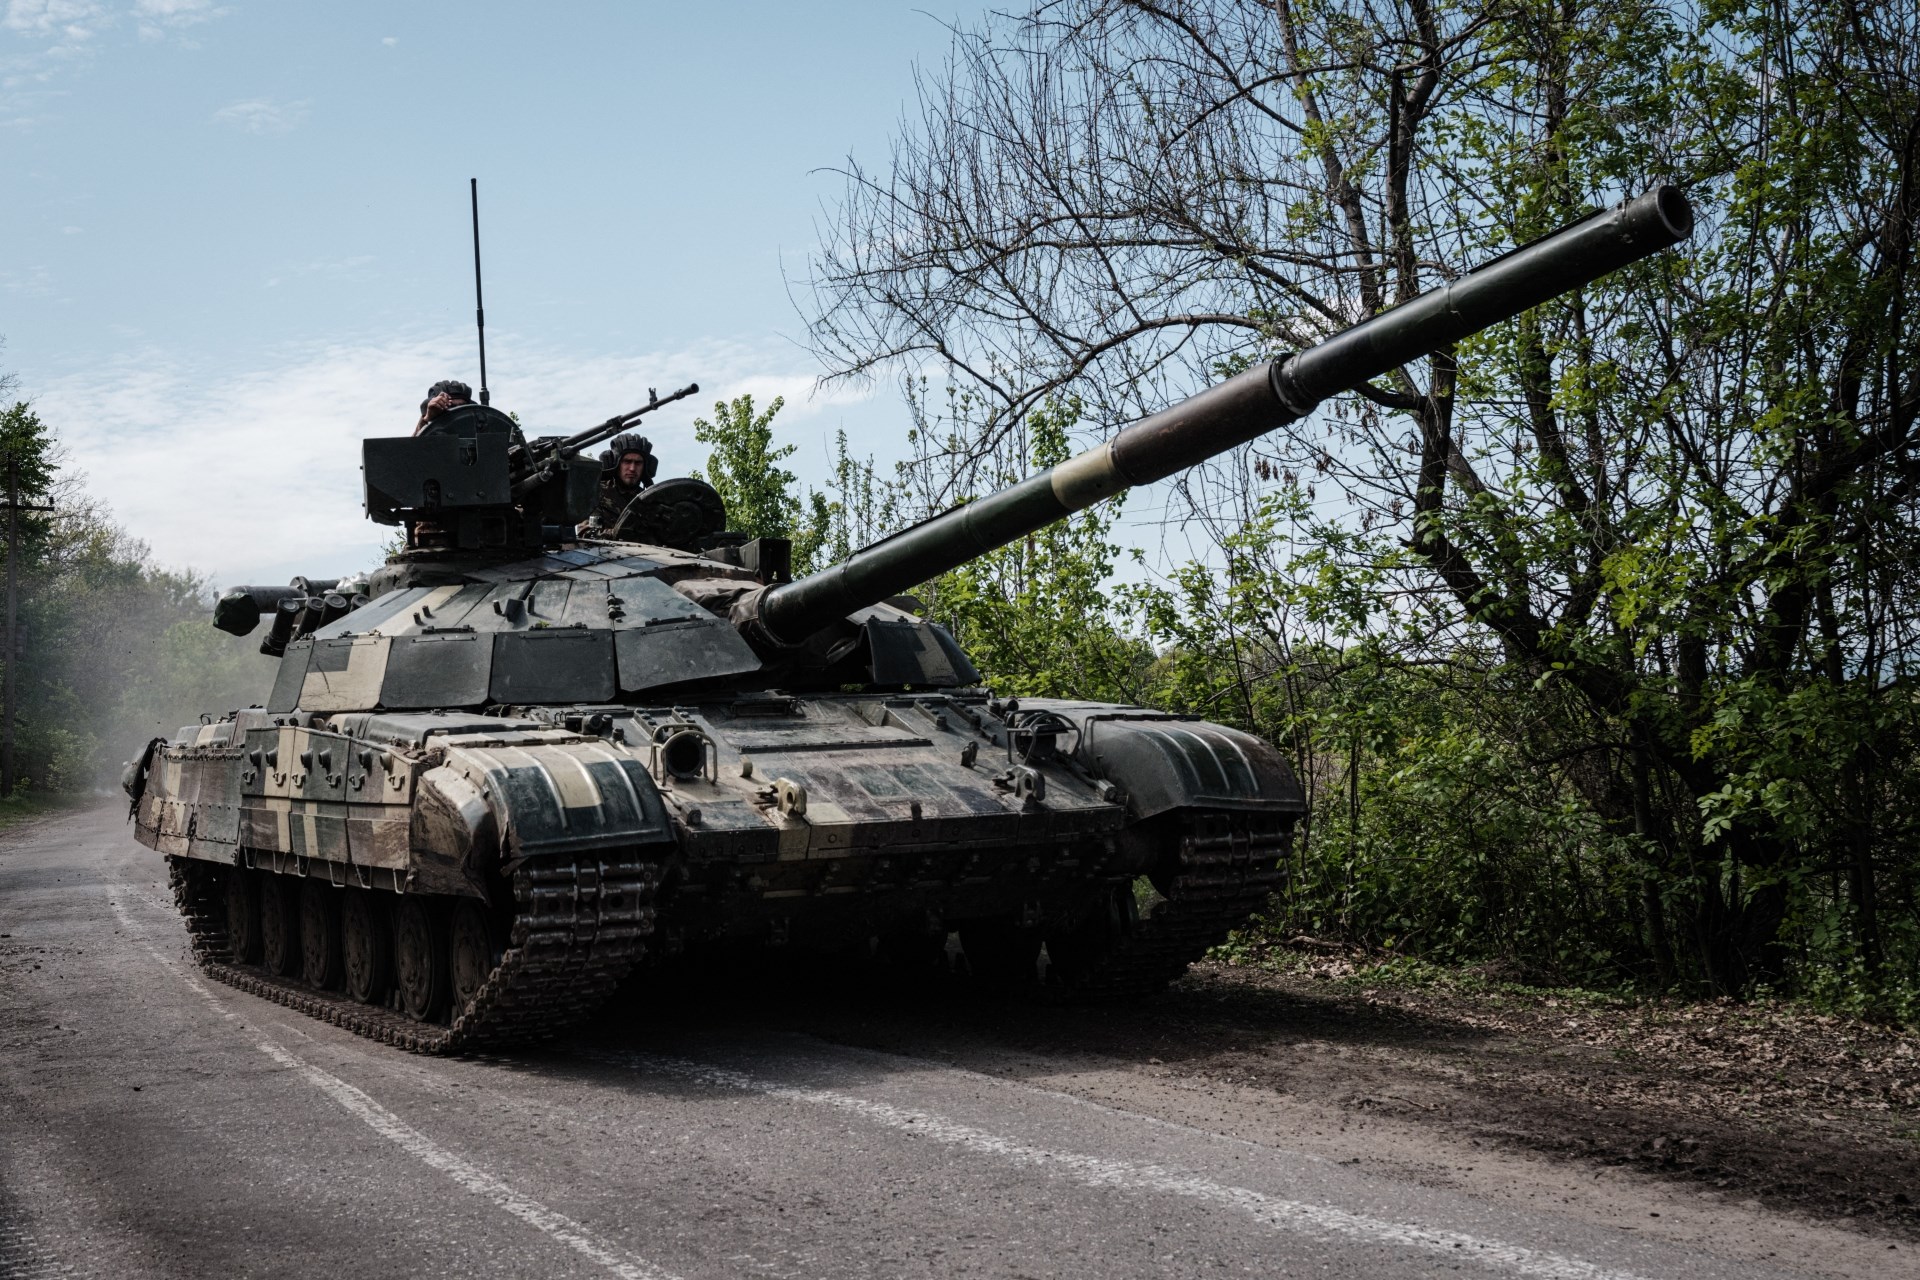 Egy nmet elemzs szerint jelents rszben Magyarorszg ltja el olajjal az ukrn hadsereget, ami risi segtsg